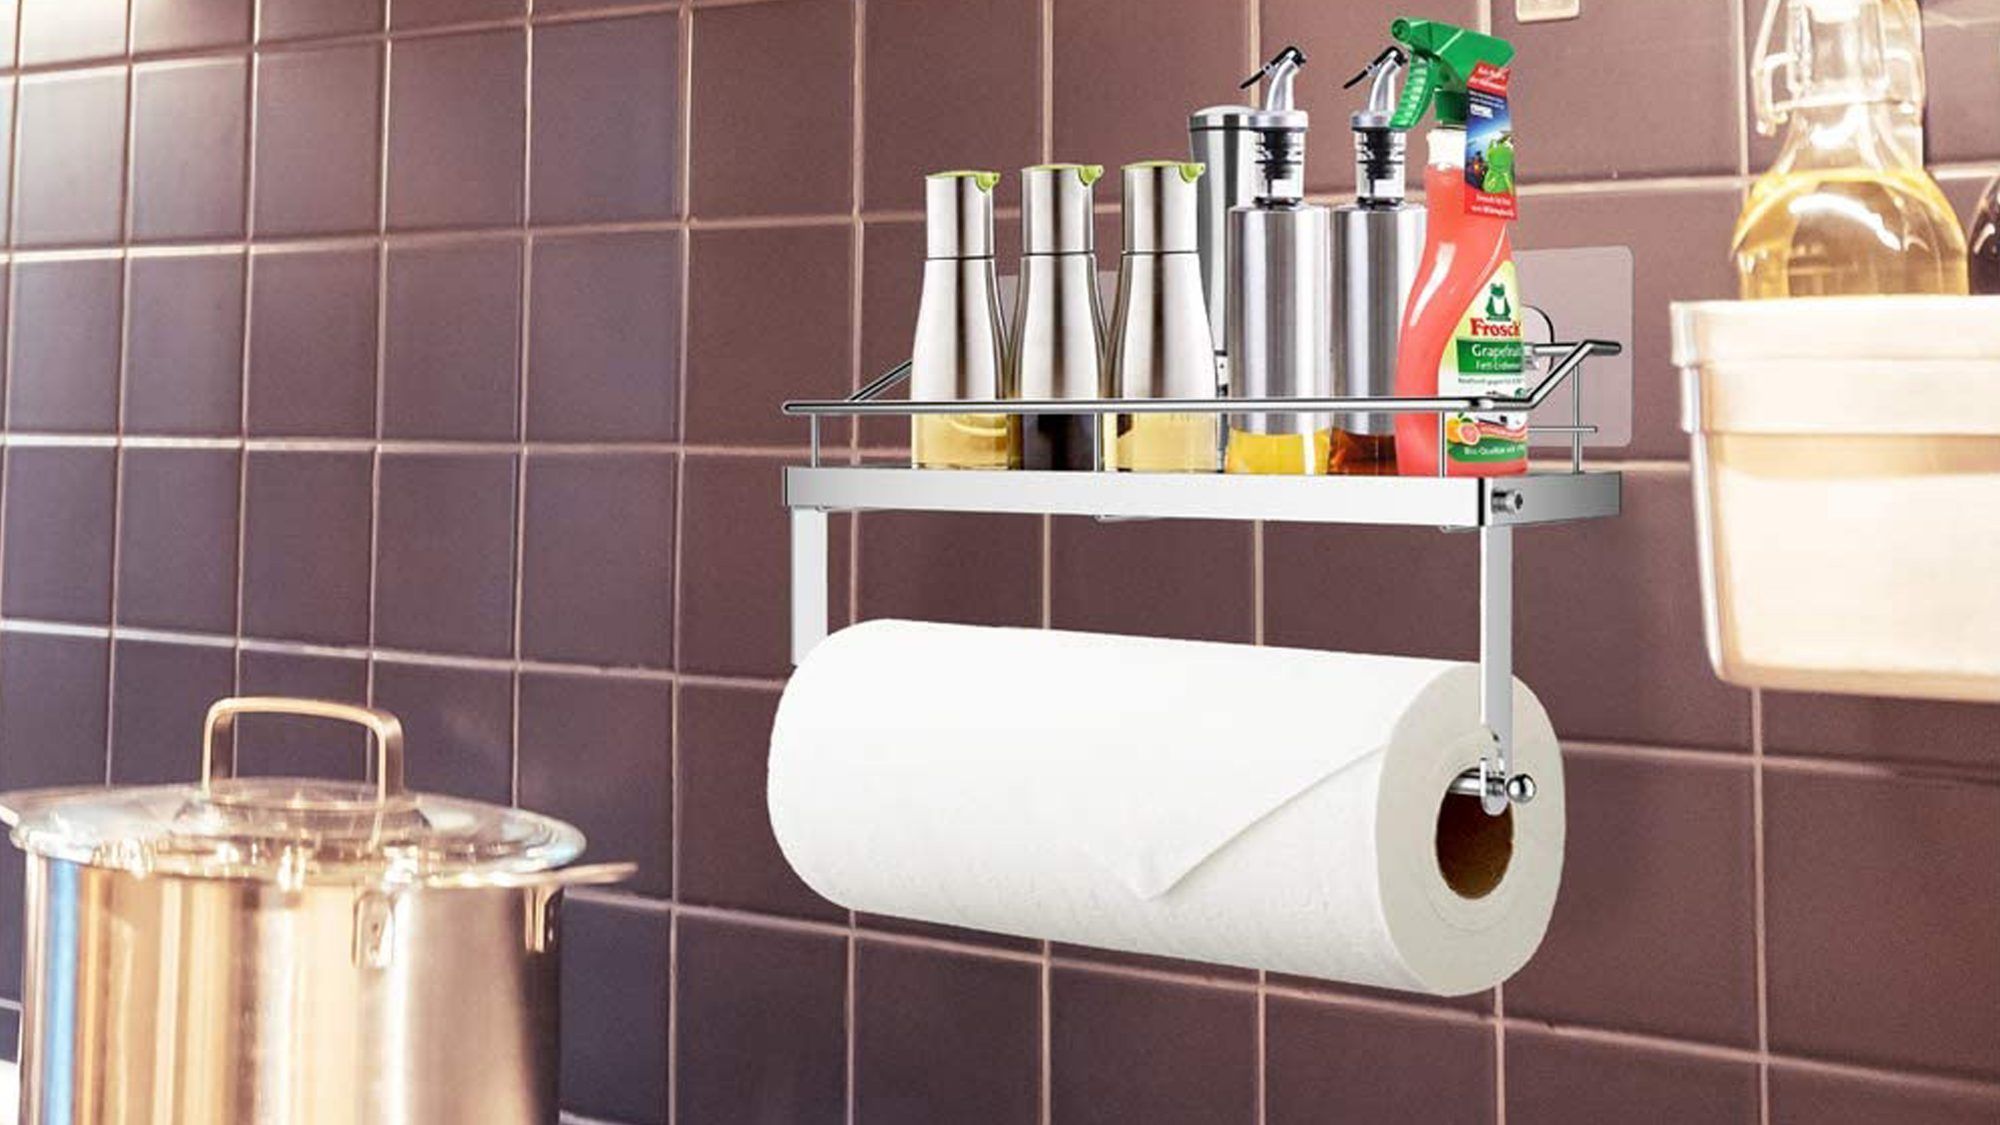 Χάρτινη θήκη για πετσέτες ODesign με αυτοκόλλητη βάση τοίχου 2 σε 1 για ντουζιέρα κουζίνας Organizer μπάνιου